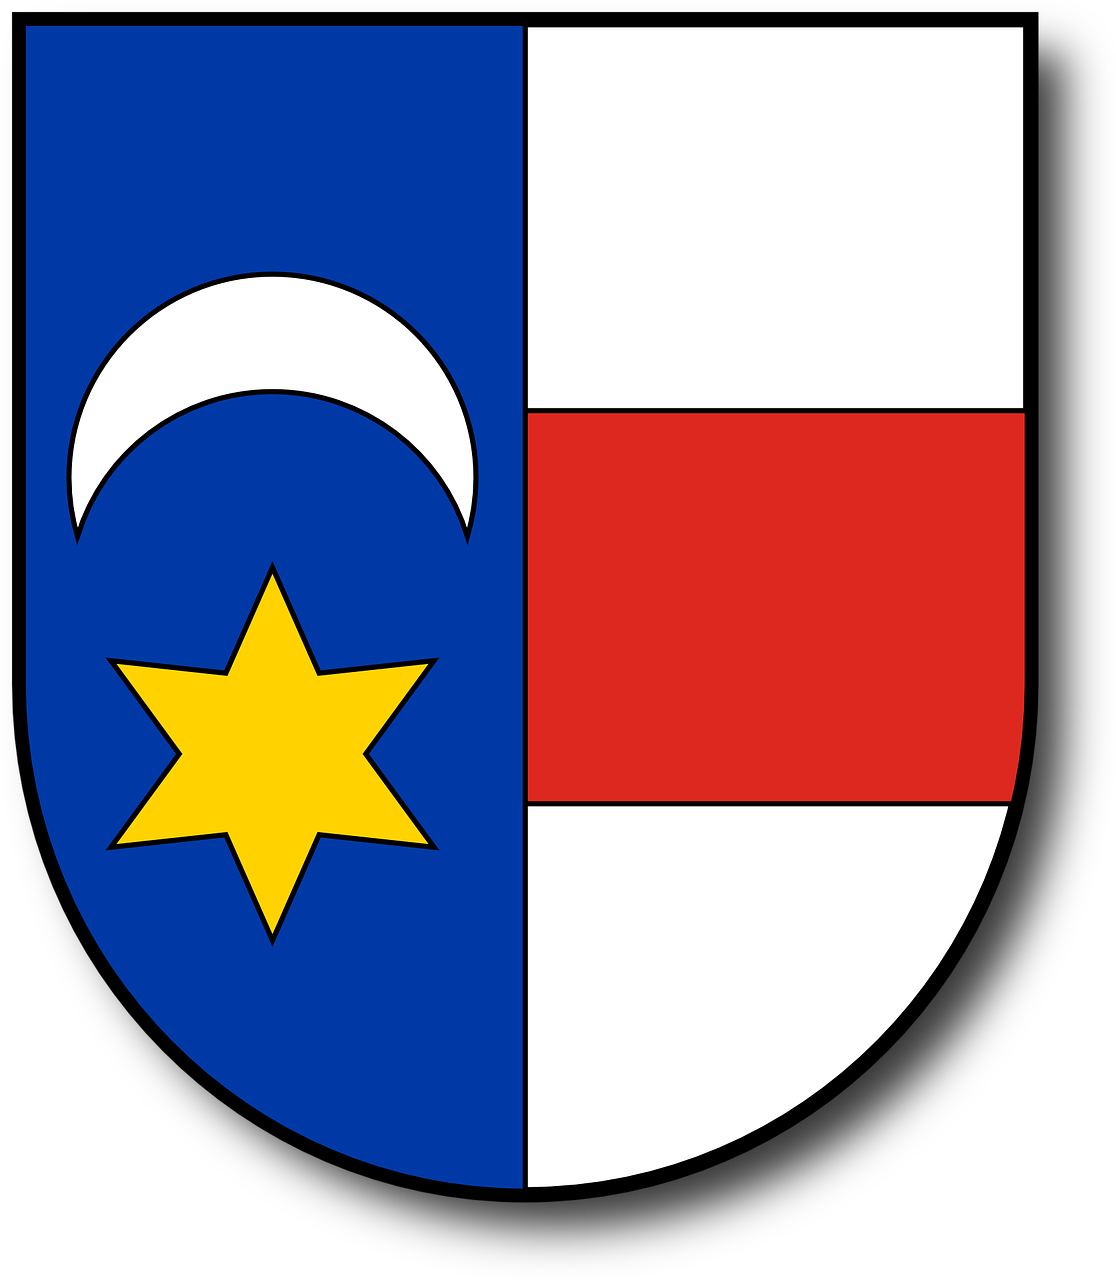 Herbas, Vengrų Kalba, Slovakija, Emblema, Valstybė, Nacionalinis, Simbolis, Vėliava, Banga, Ženminbi